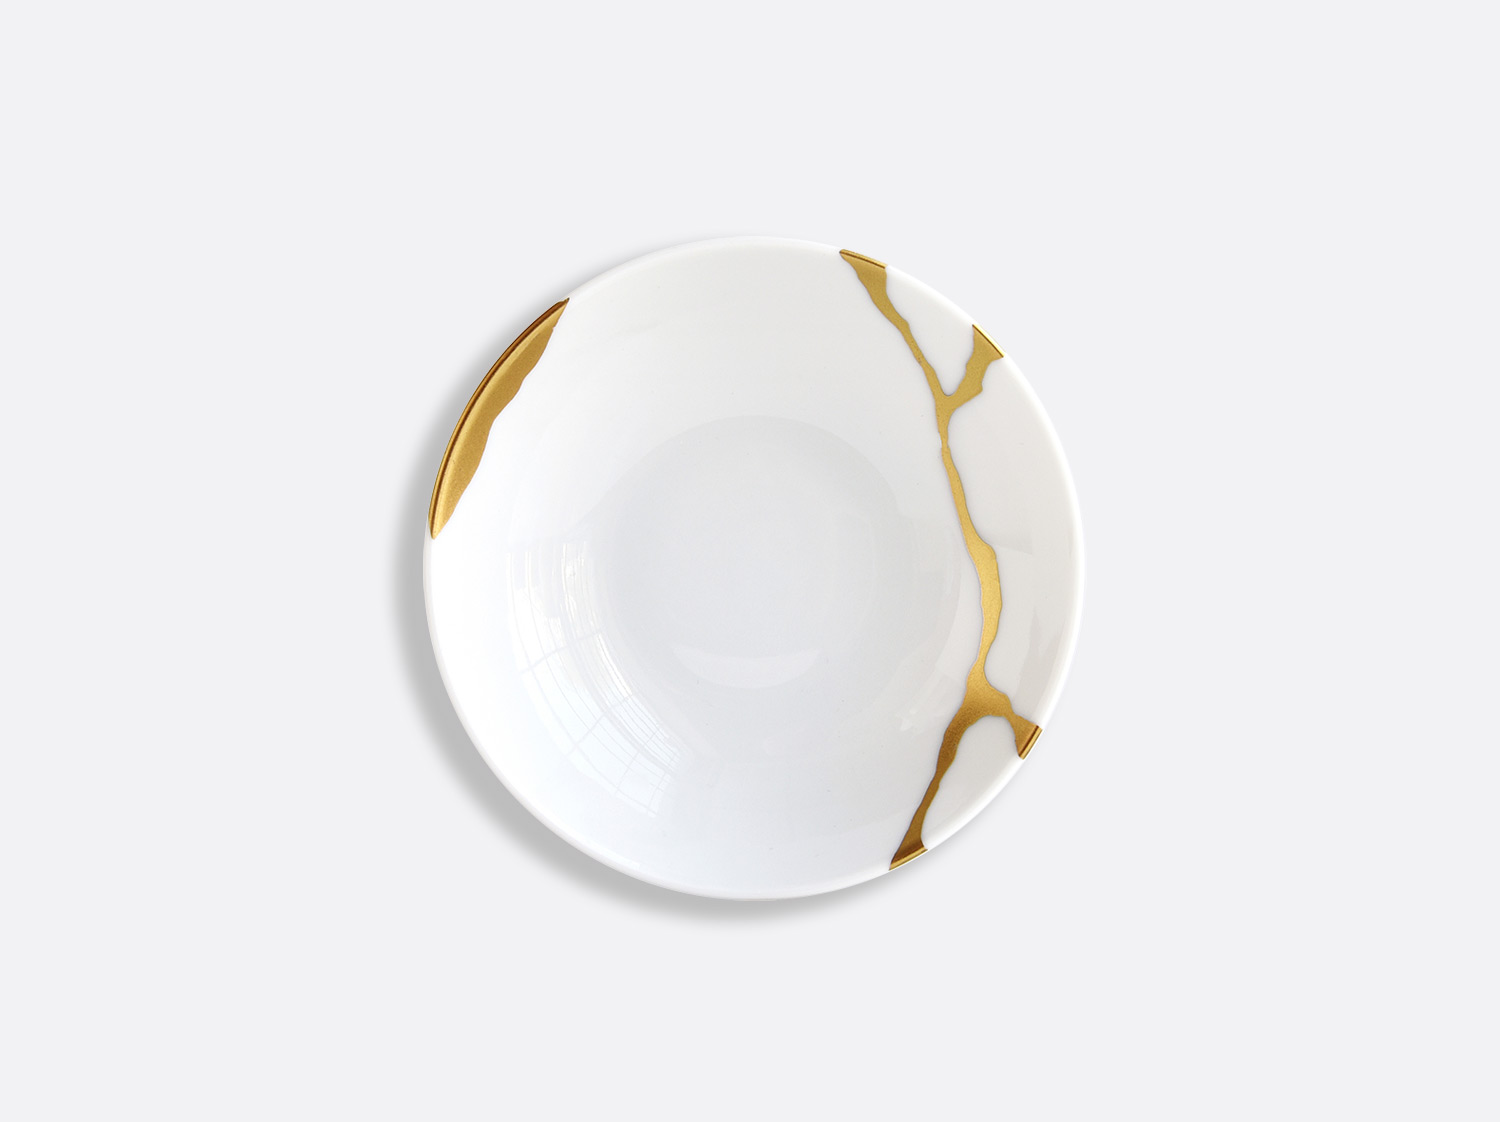 China Dish 4'' of the collection Kintsugi | Bernardaud